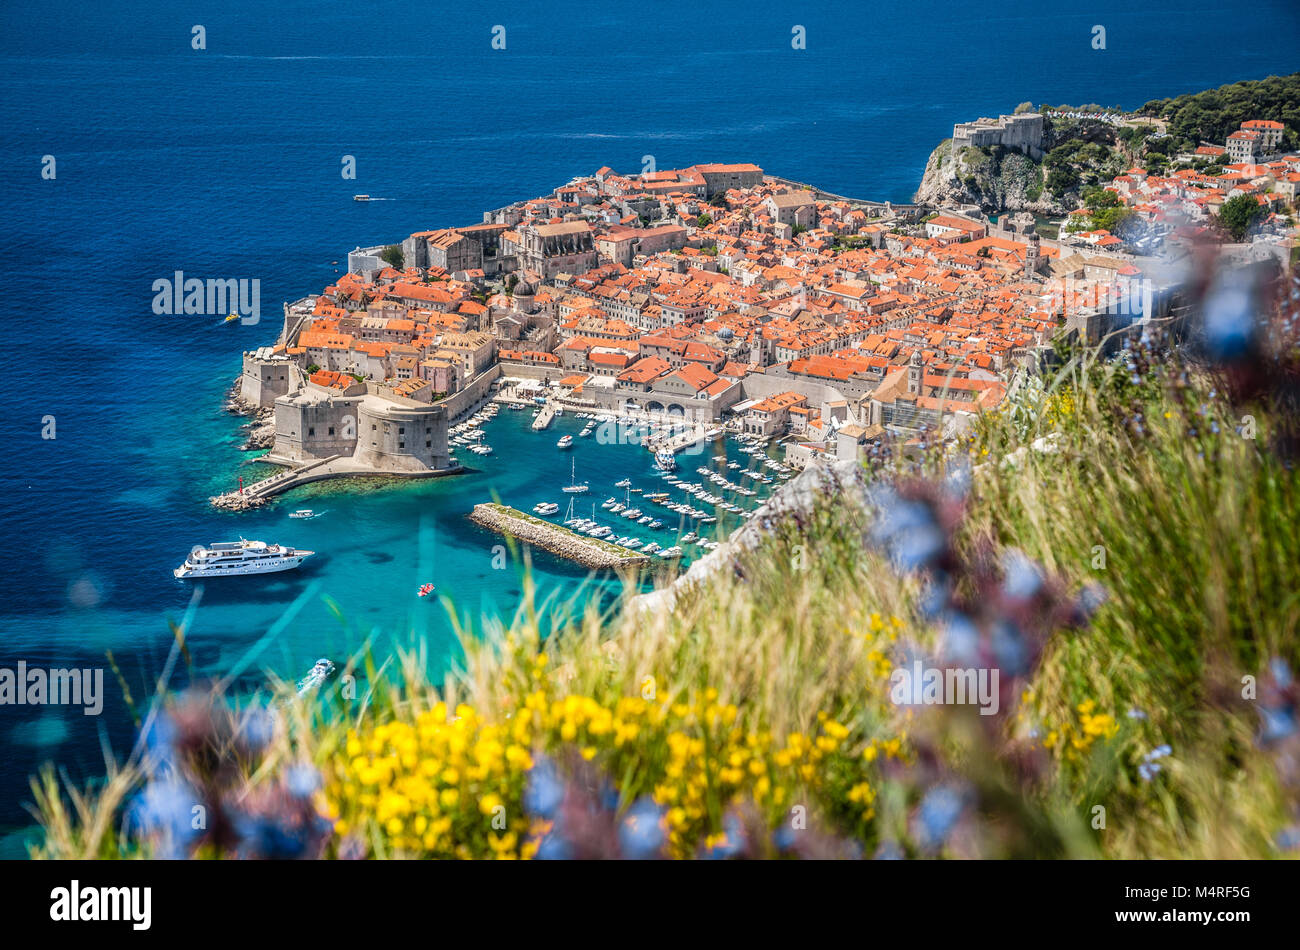 Vue aérienne de la ville historique de Dubrovnik, l'une des plus célèbres destinations touristiques de la Méditerranée, de Srd mountain, Croatie Banque D'Images